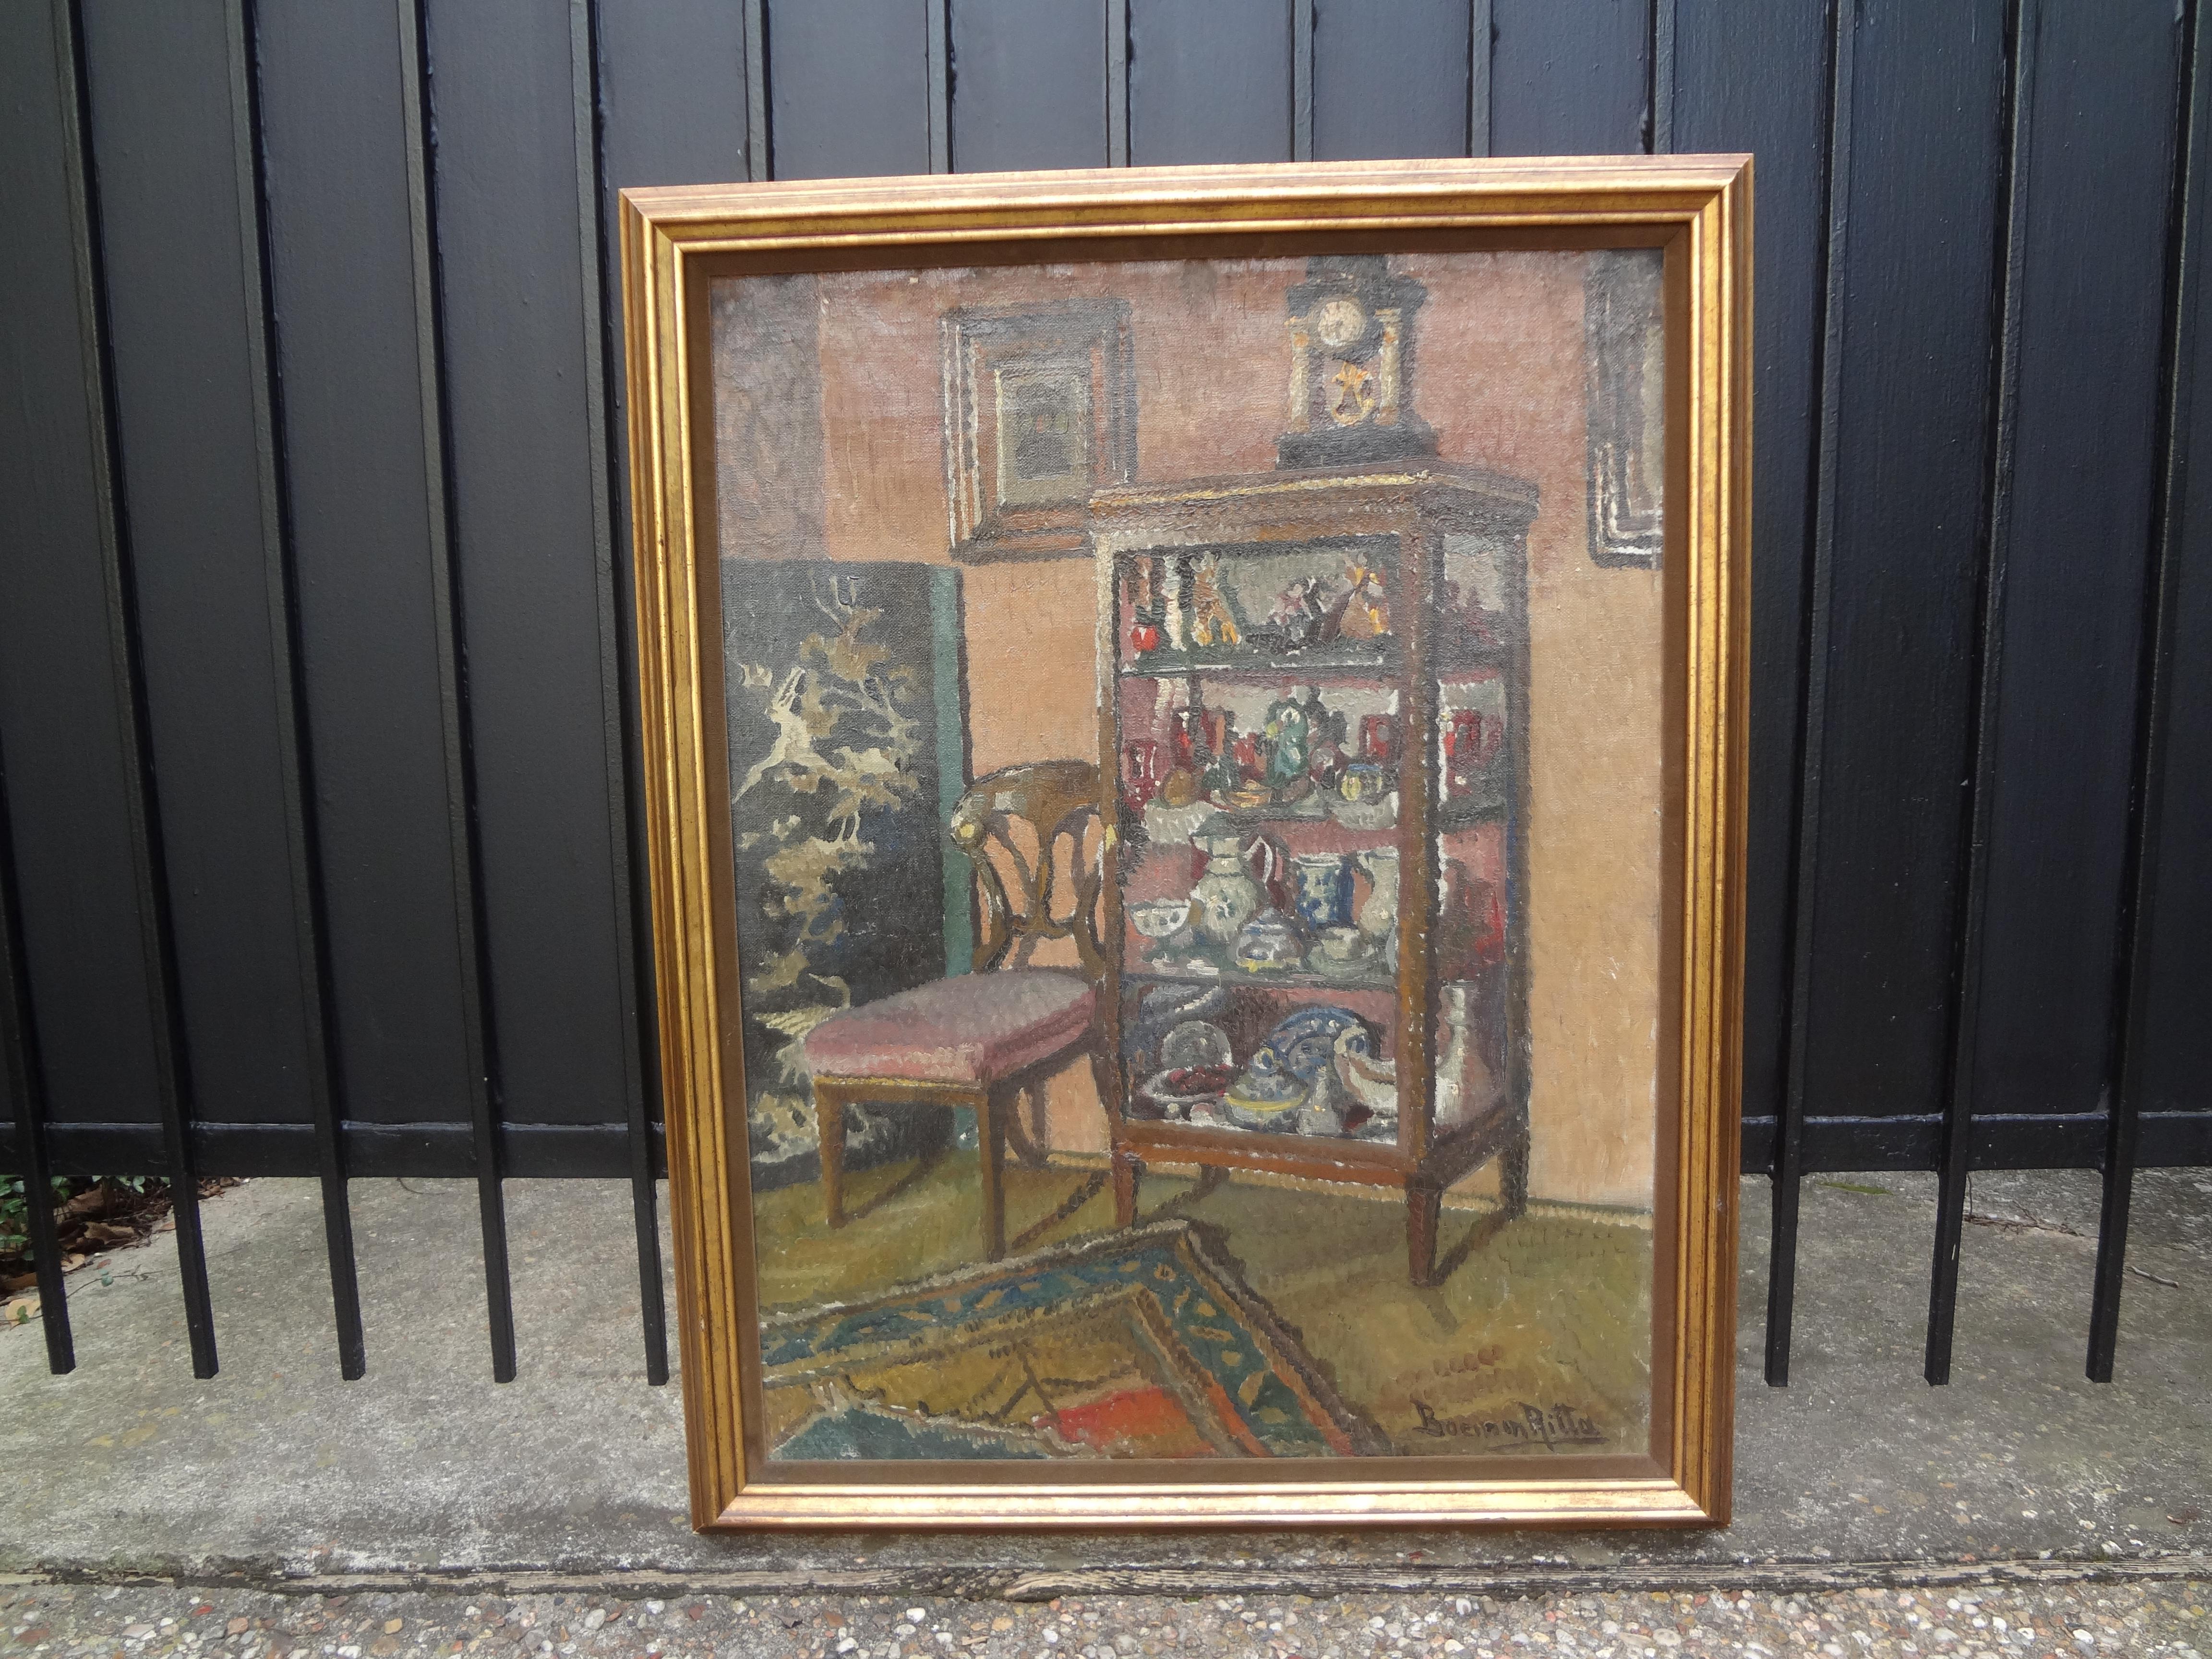 huile sur toile de Ritta Boemm, scène d'intérieur continentale du 19ème siècle. Cette charmante photo d'intérieur représente une pièce avec une chaise, un tapis persan et une vitrine contenant une collection surmontée d'une horloge.
Ritta Boemm